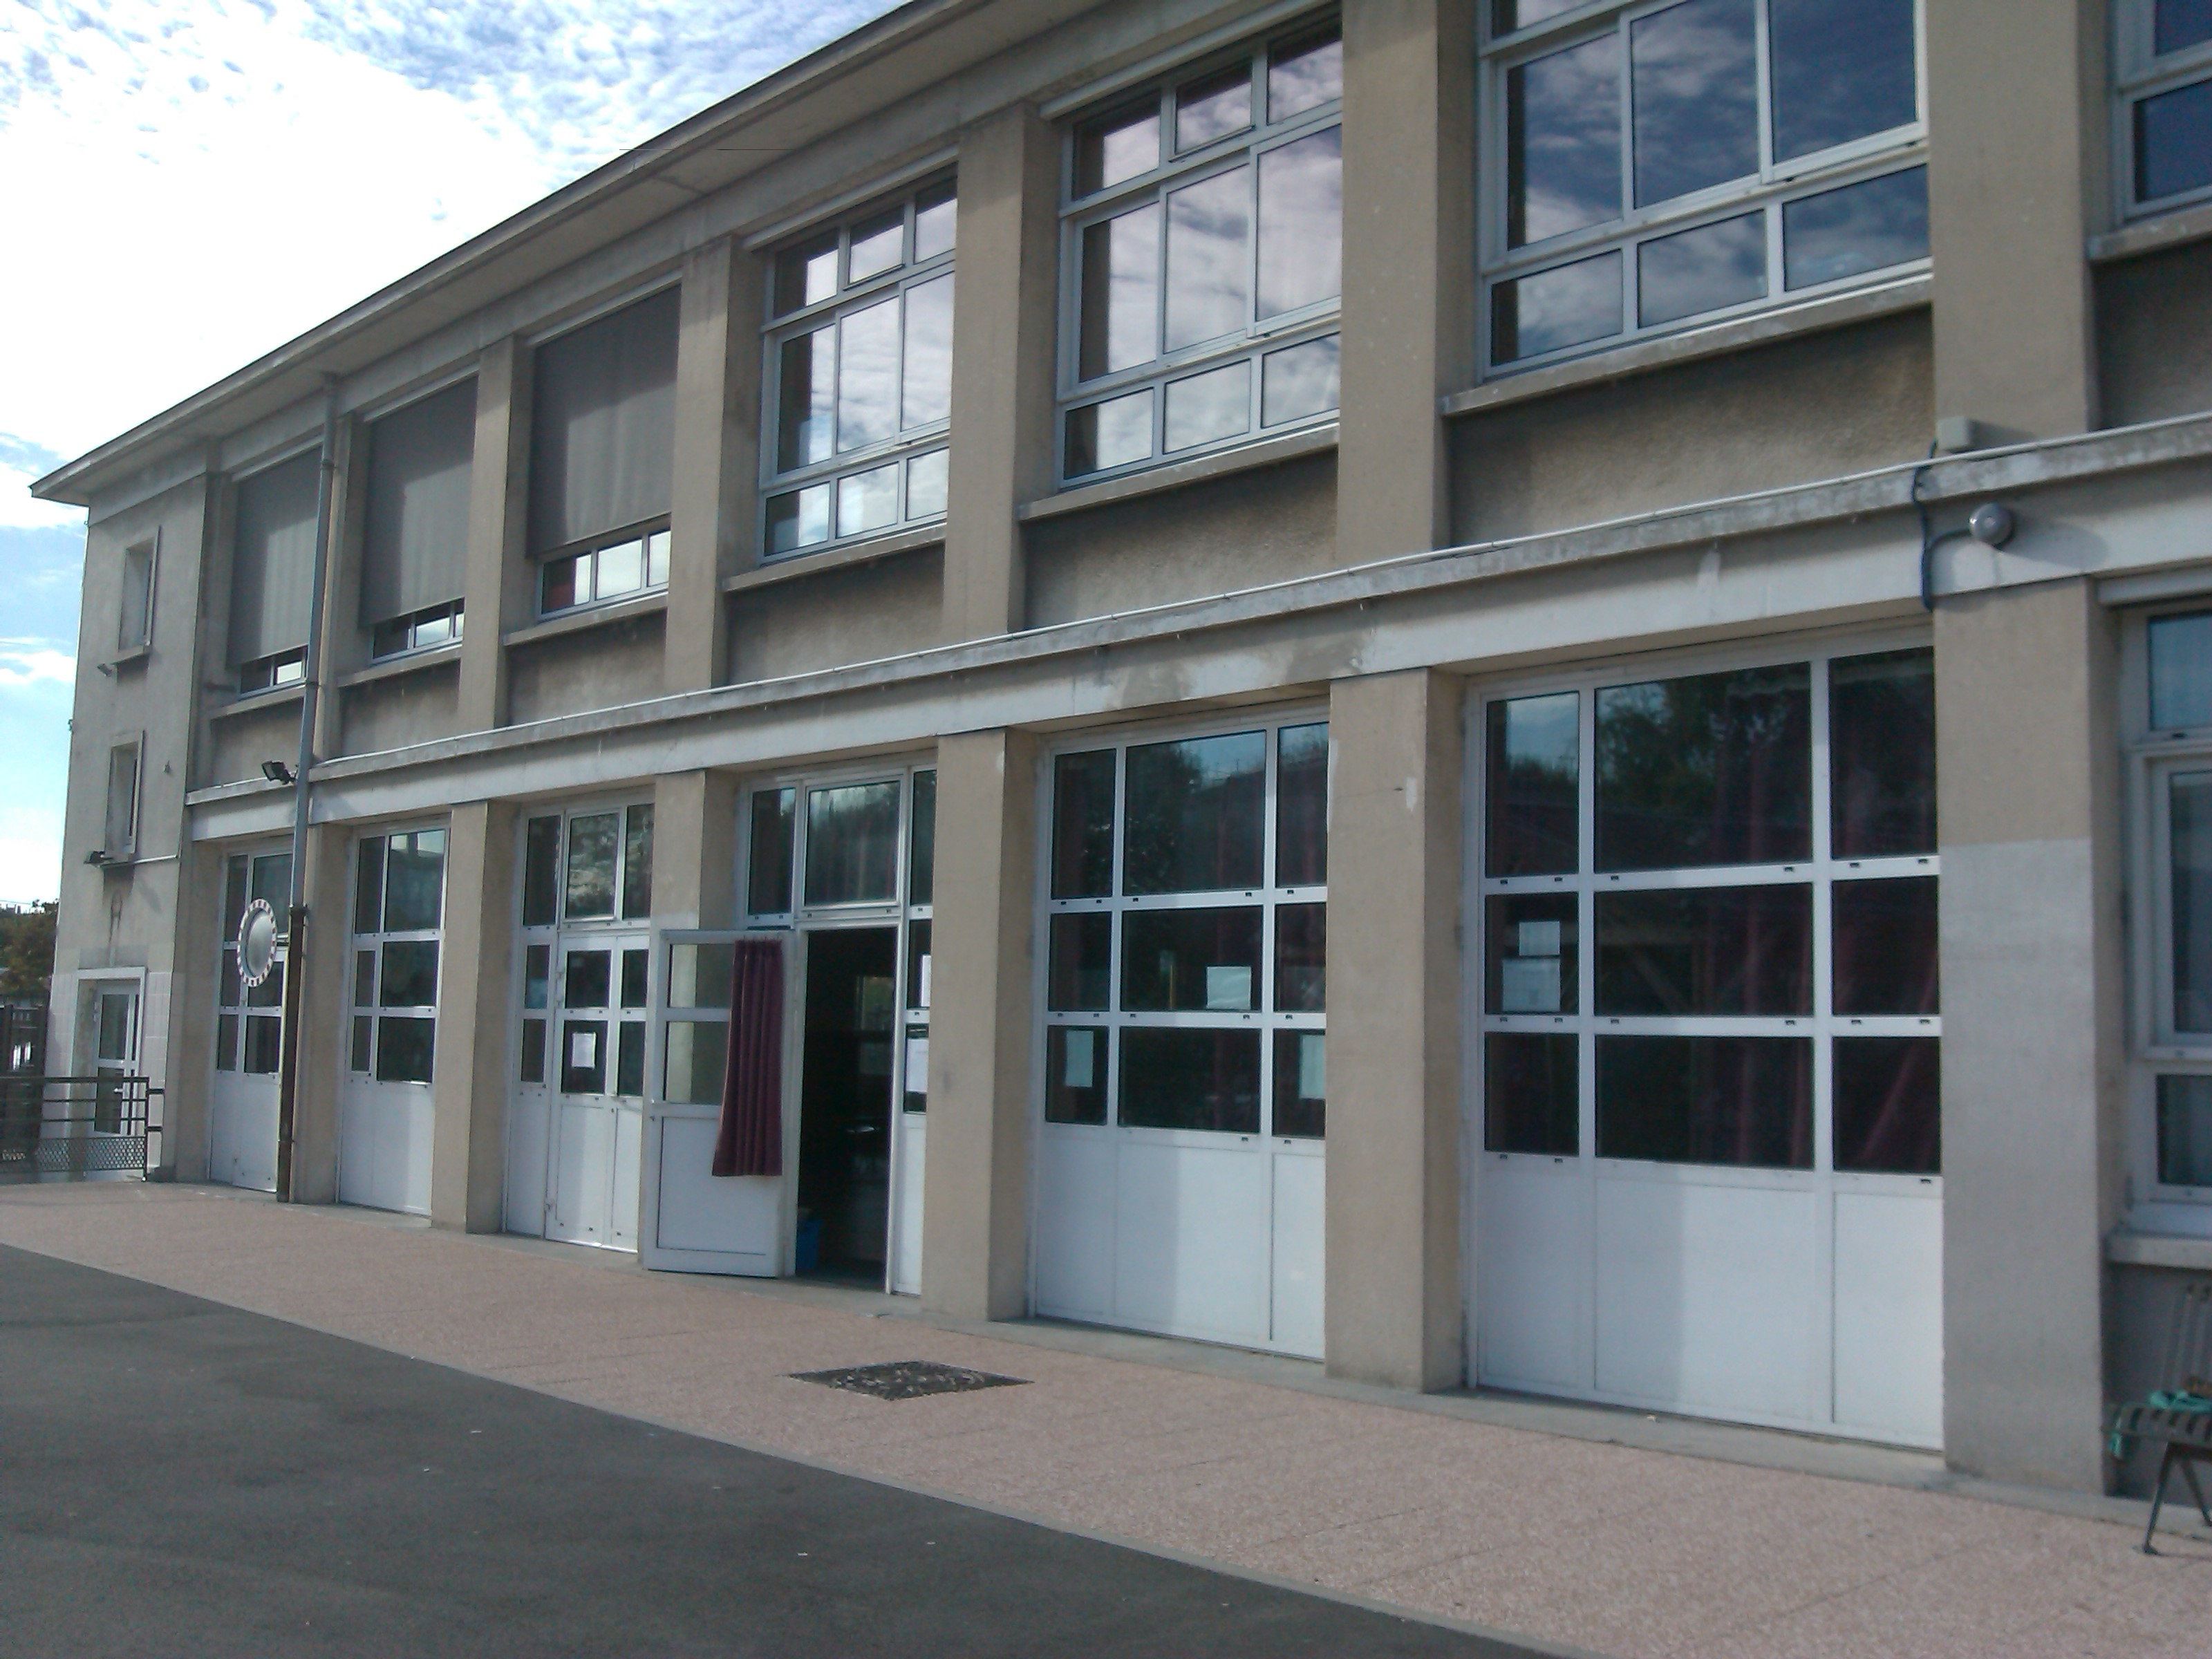 Renseignements - Ecole élémentaire Jean Moulin à Rosny-sous-Bois